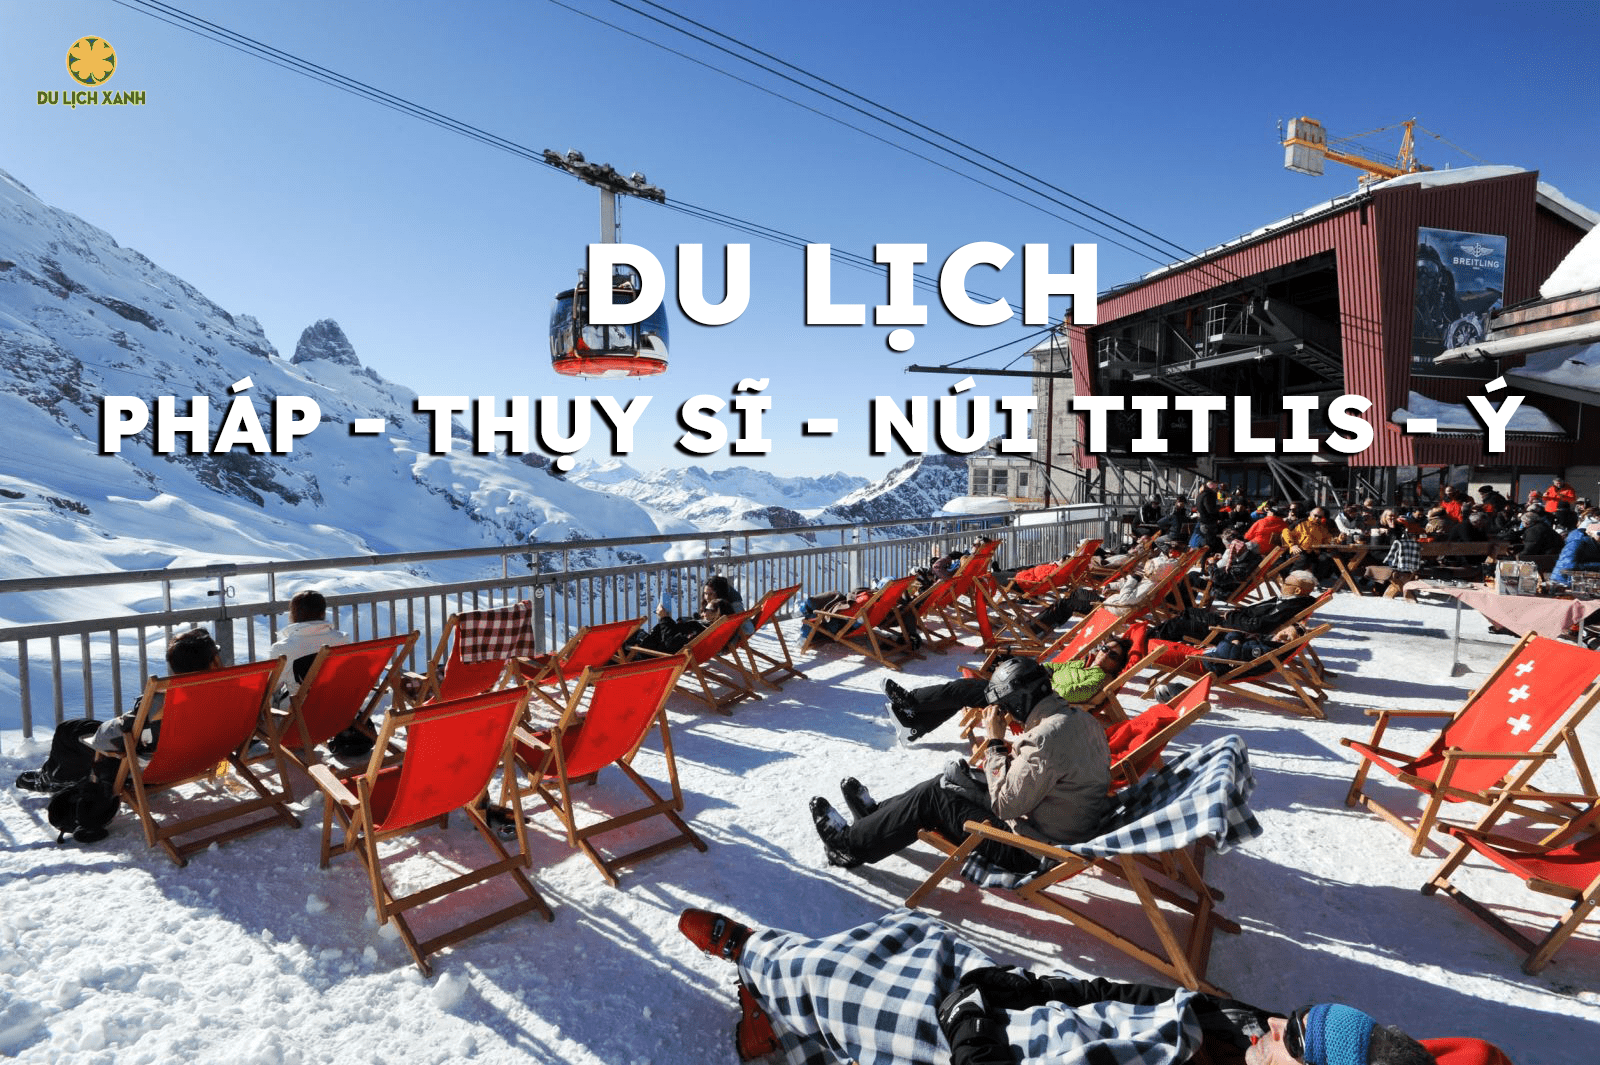 Du lịch Châu Âu: Pháp - Thụy Sĩ - Núi Titlis - Ý  10N9D từ Hà Nội